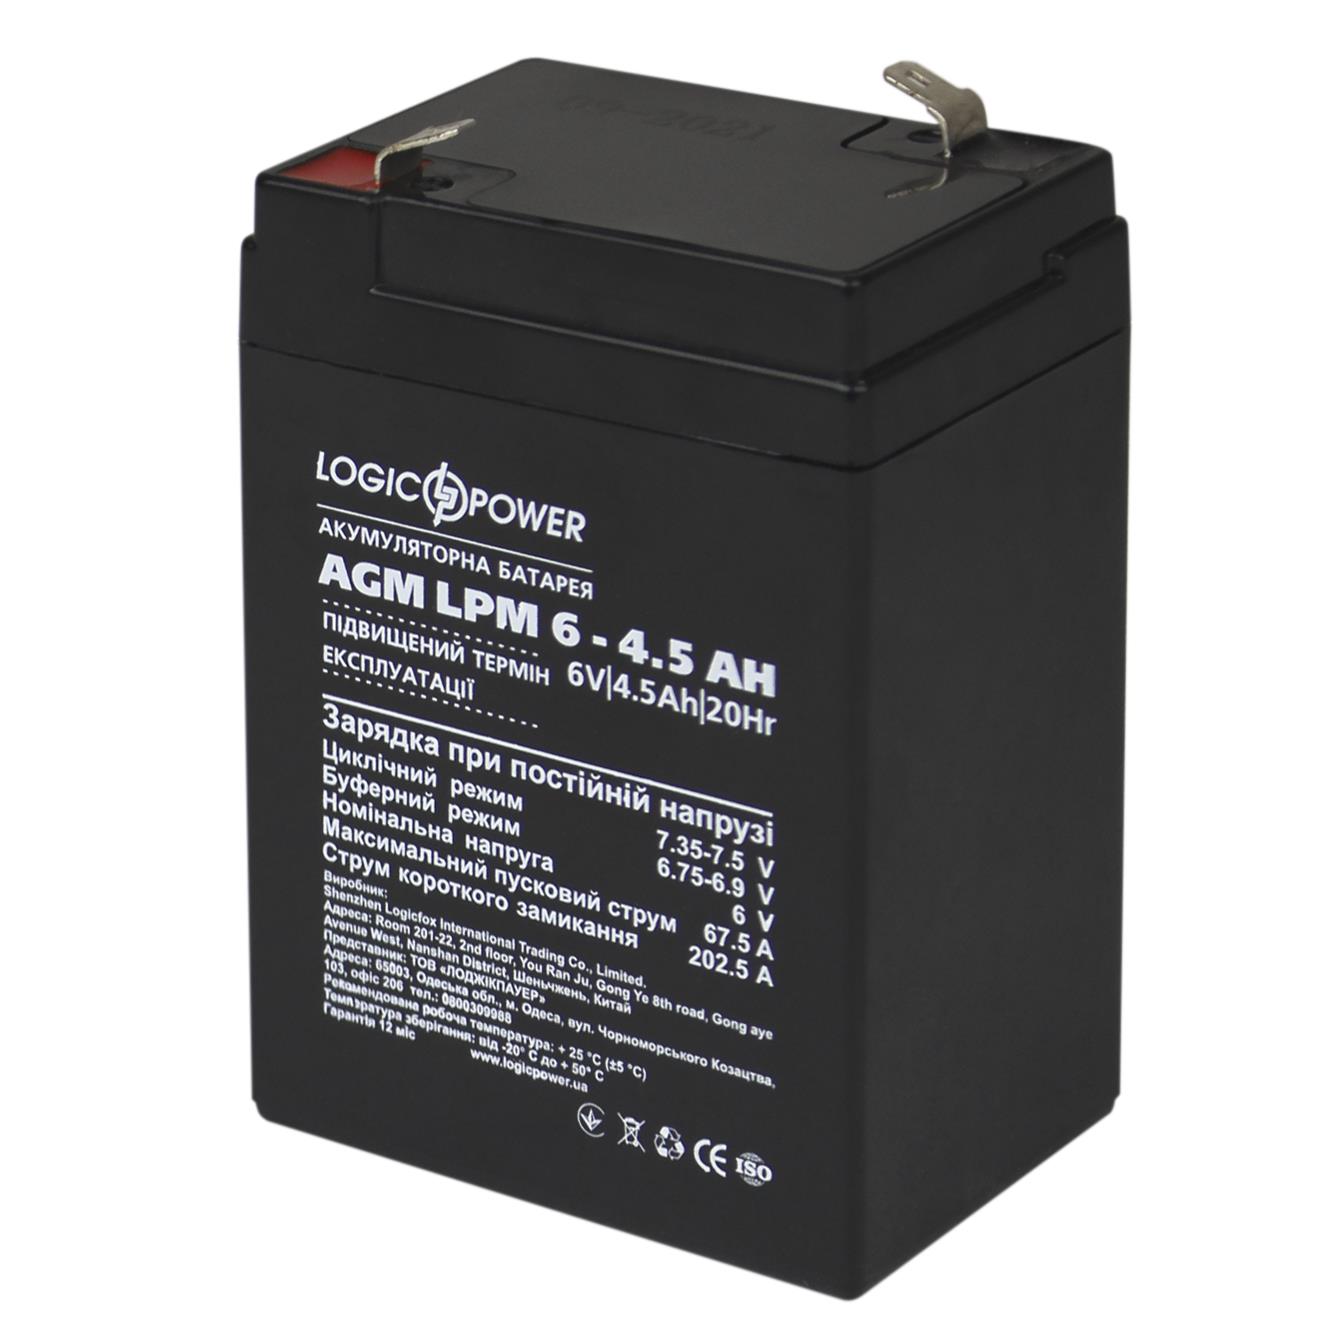 Акумулятор 6 В LogicPower AGM LPM 6V - 4.5 Ah (3860)